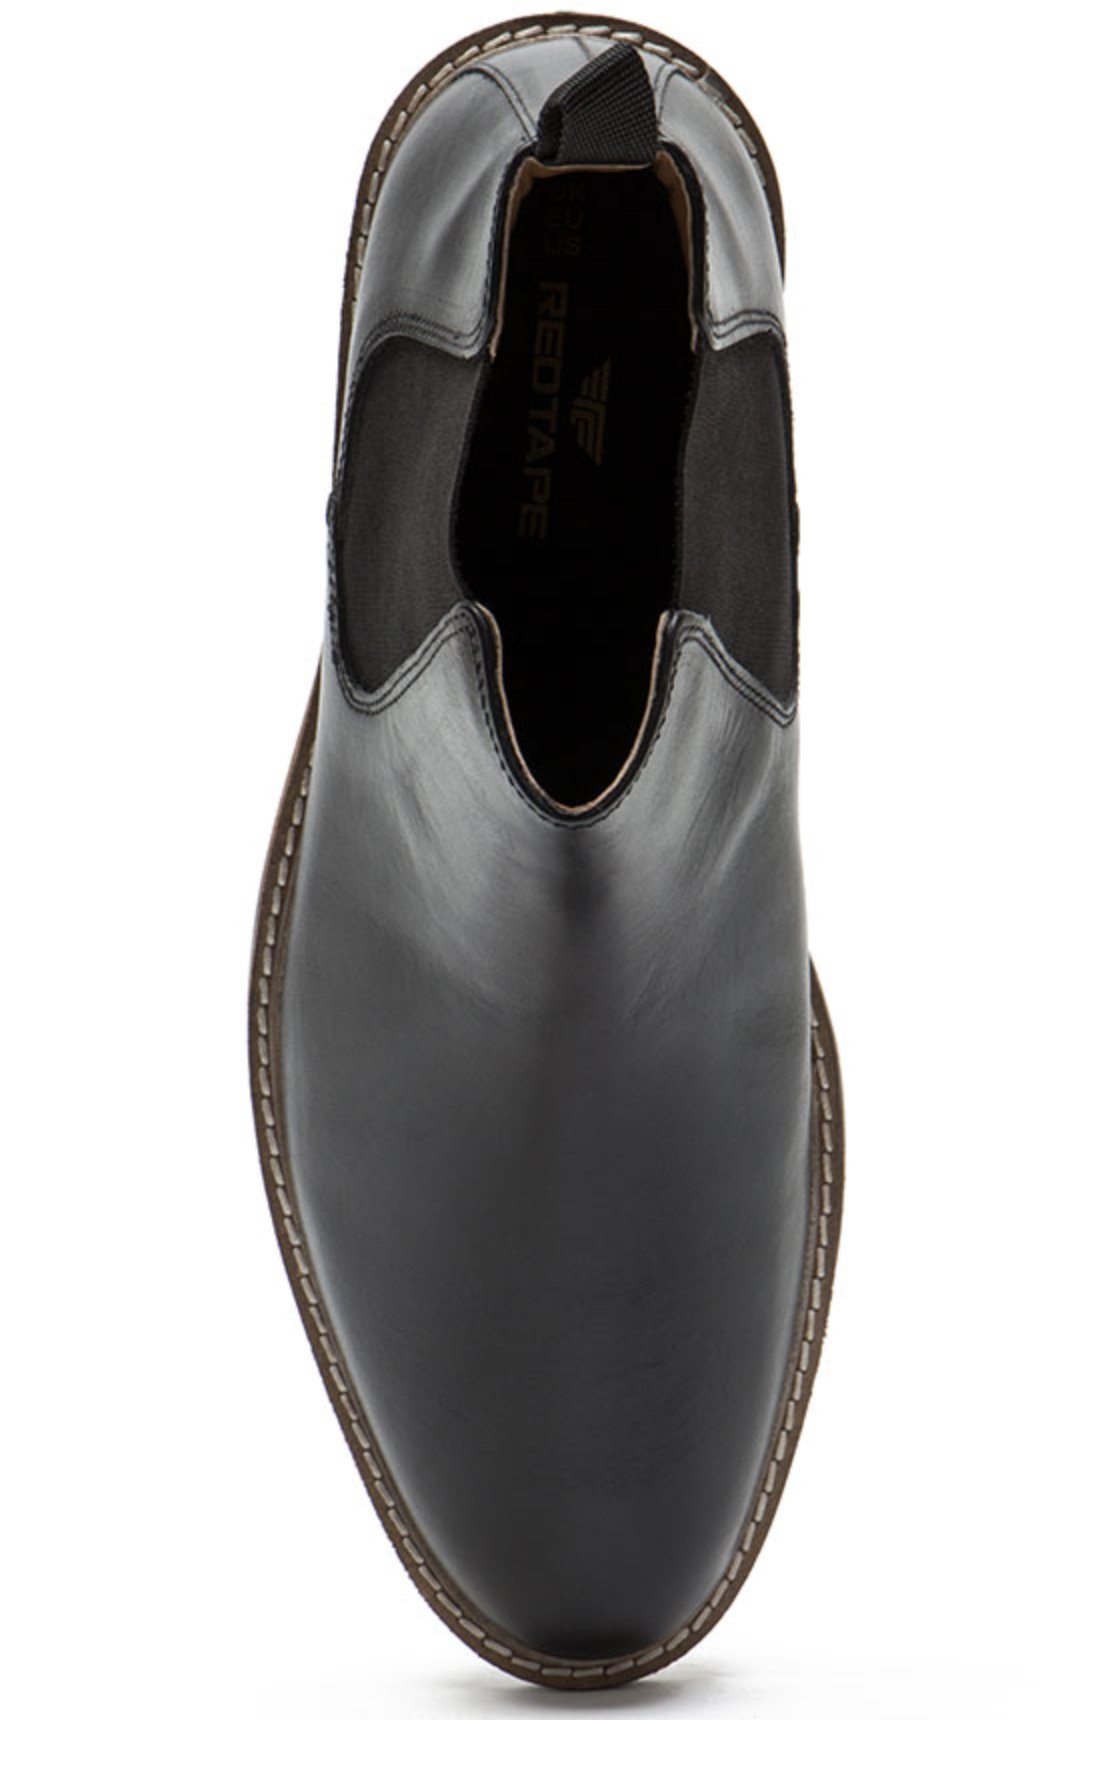 Men's Leather Chelsea Boots Black - Batem - GLS Clothing